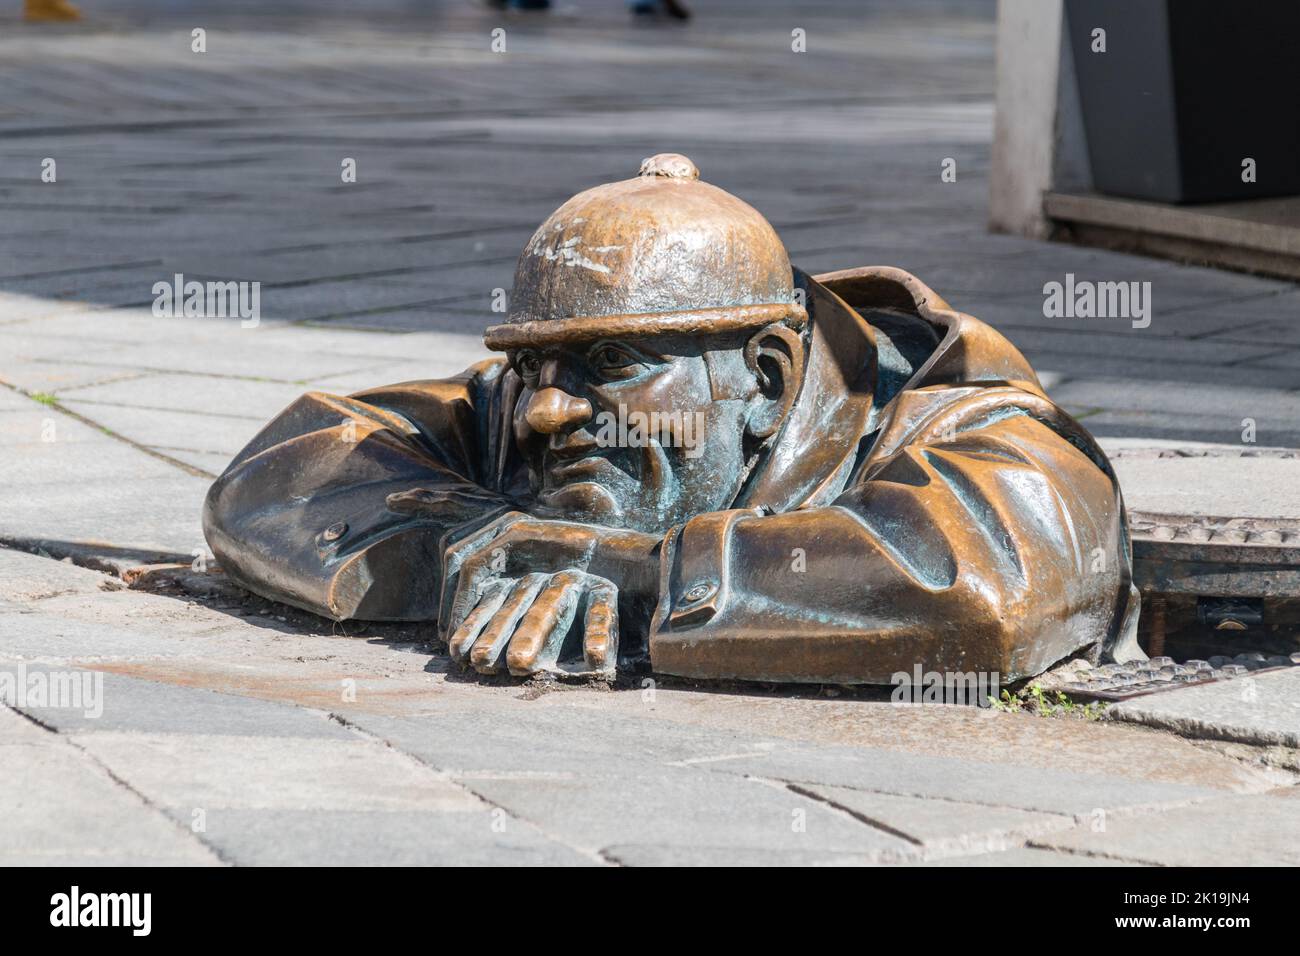 Bratislava, Slovaquie - 31 mai 2022 : sculpture de rue connue sous le nom de Cumil Man at Work. La sculpture montre un homme d'égout s'inclinant hors d'un trou d'homme ouvert. Banque D'Images